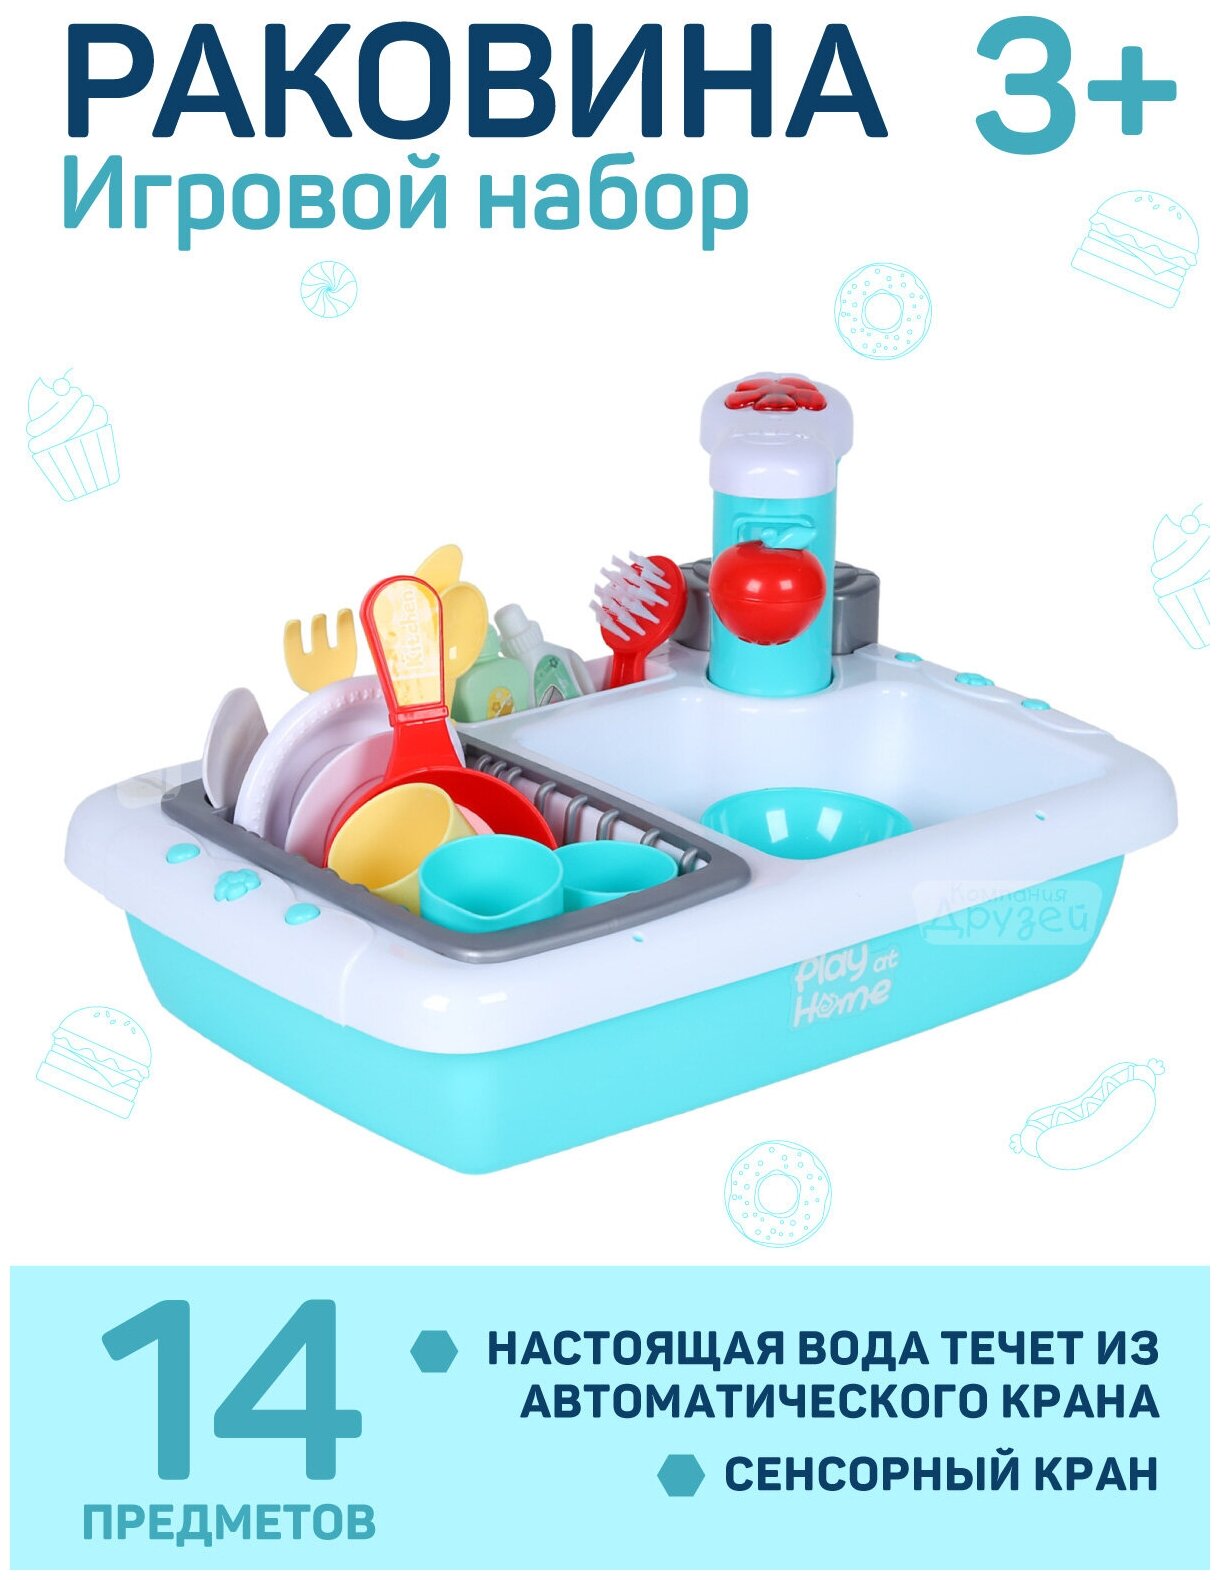 Кухня детская игровая, раковина с водой, игрушечная посуда, столовые приборы, для девочек, для игры в хозяйку, голубой, JB0209150